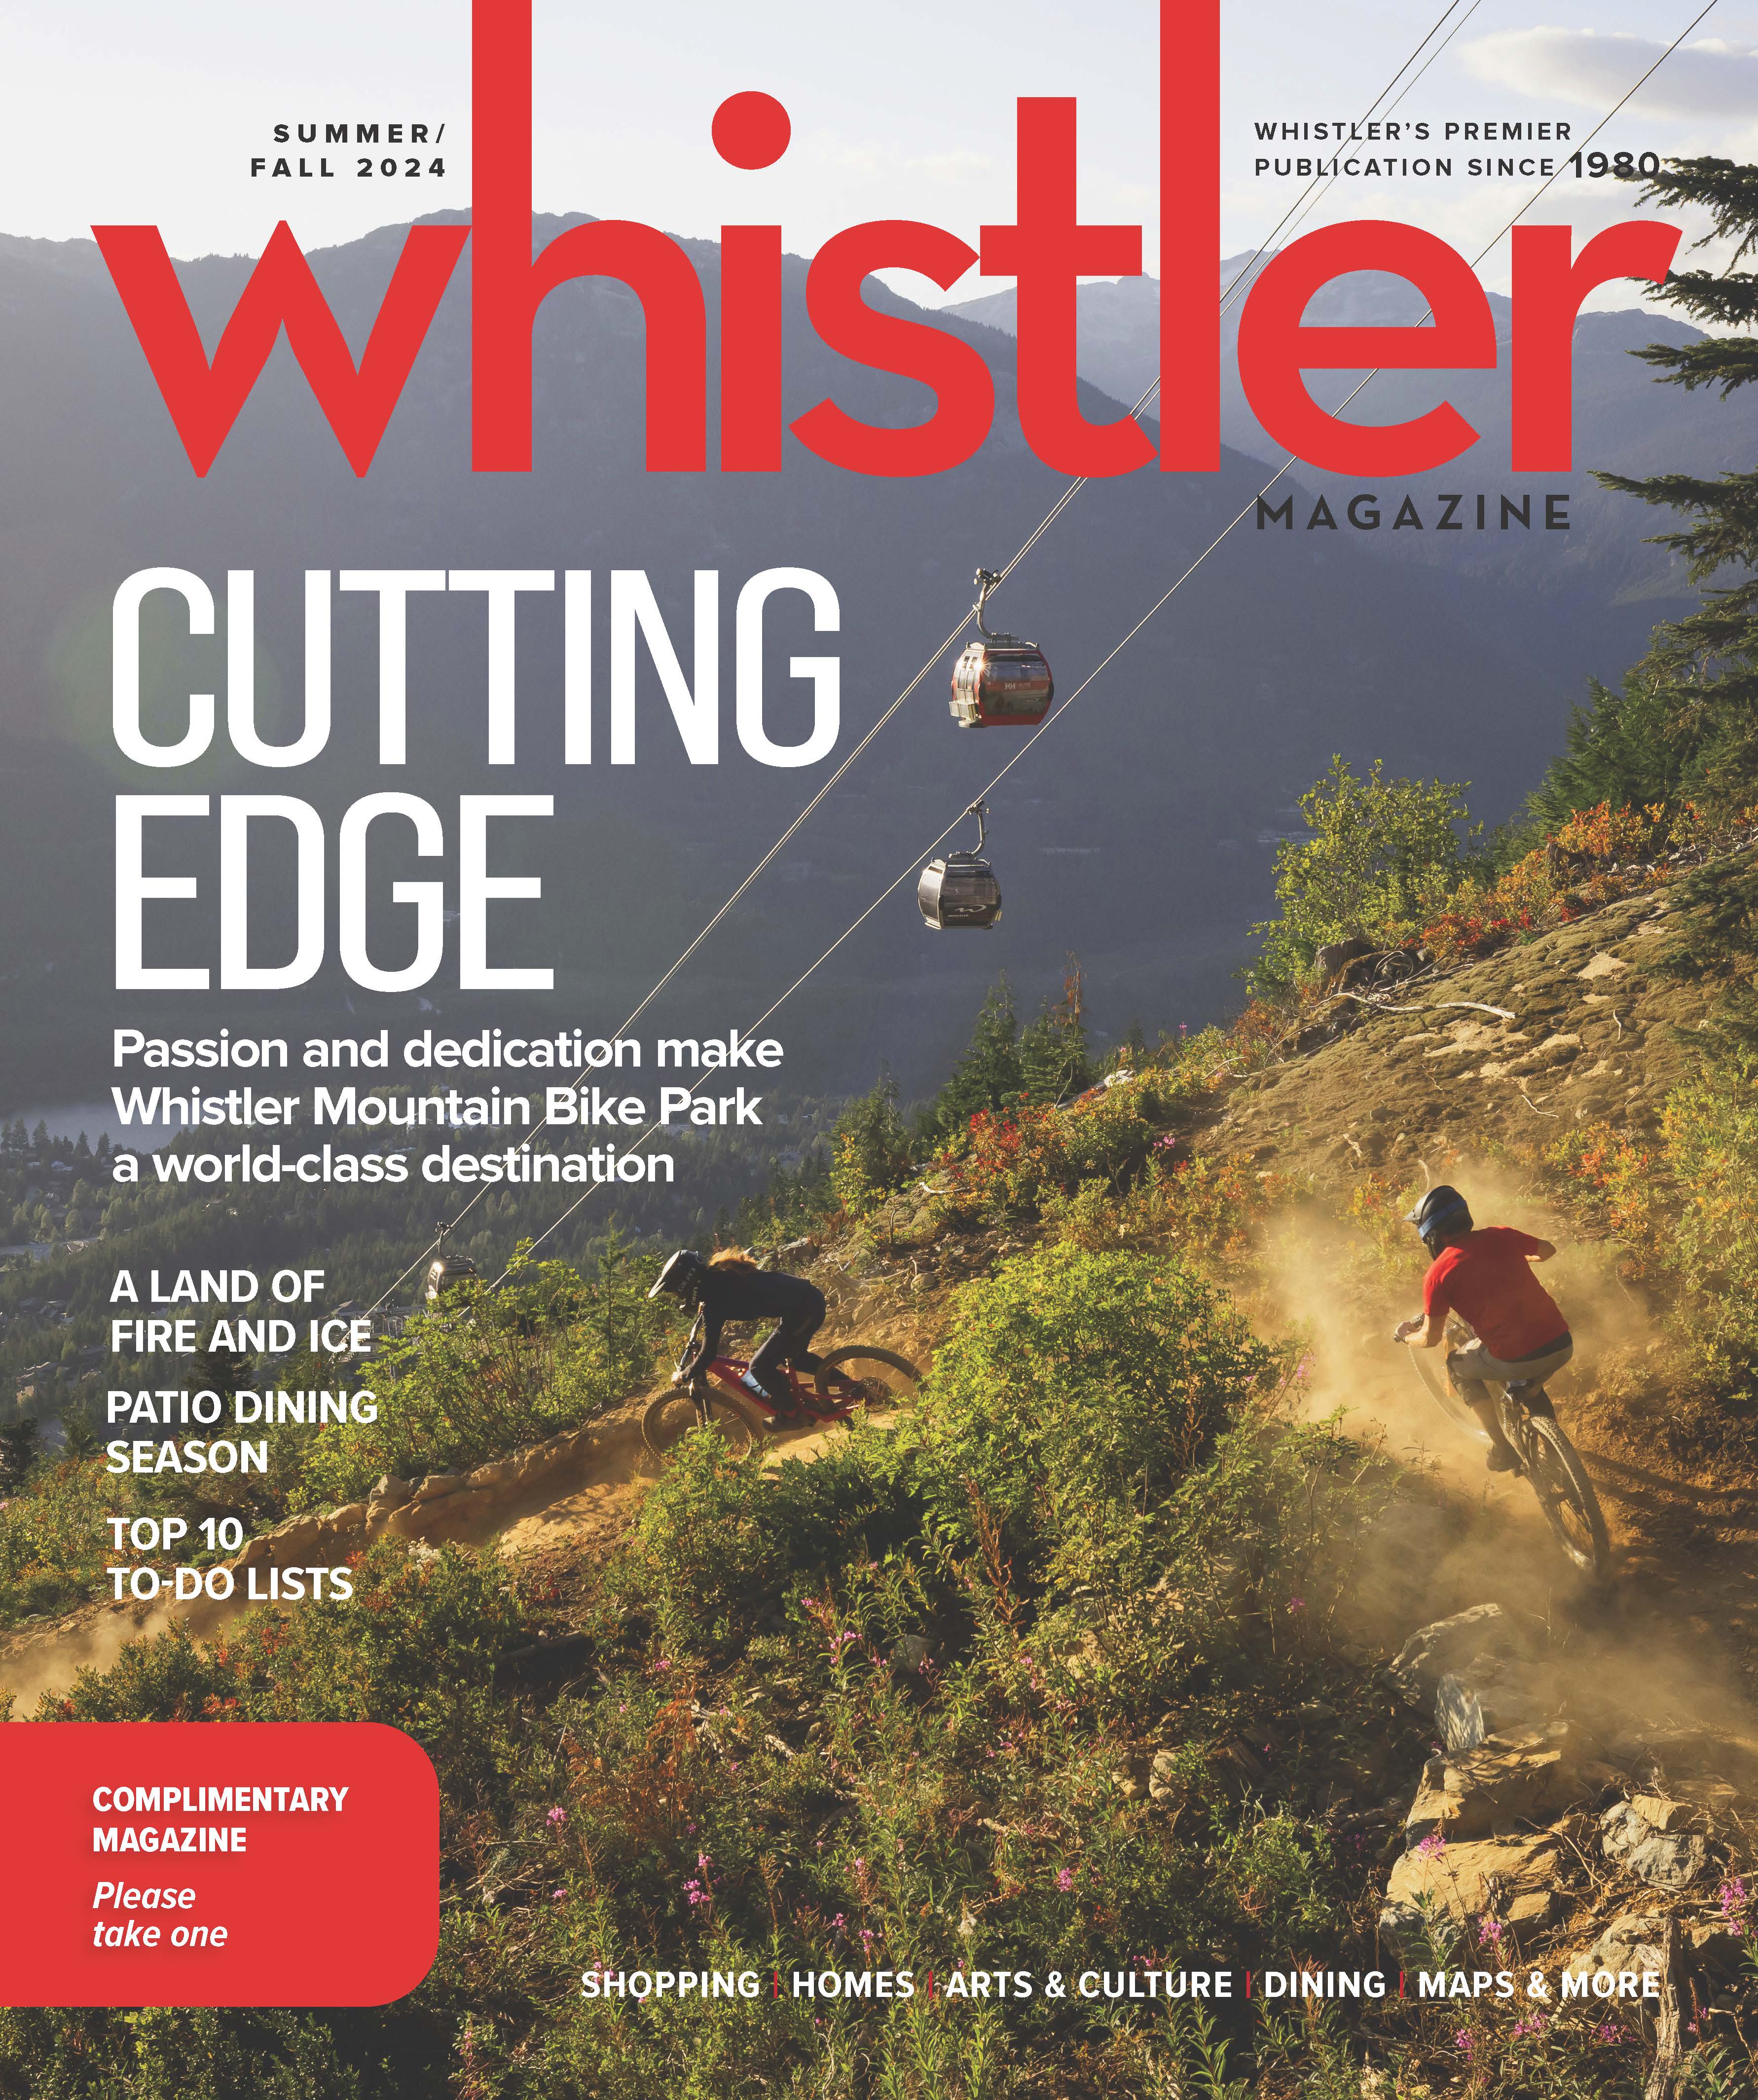 Whistler Magazine Summer 2024 cover